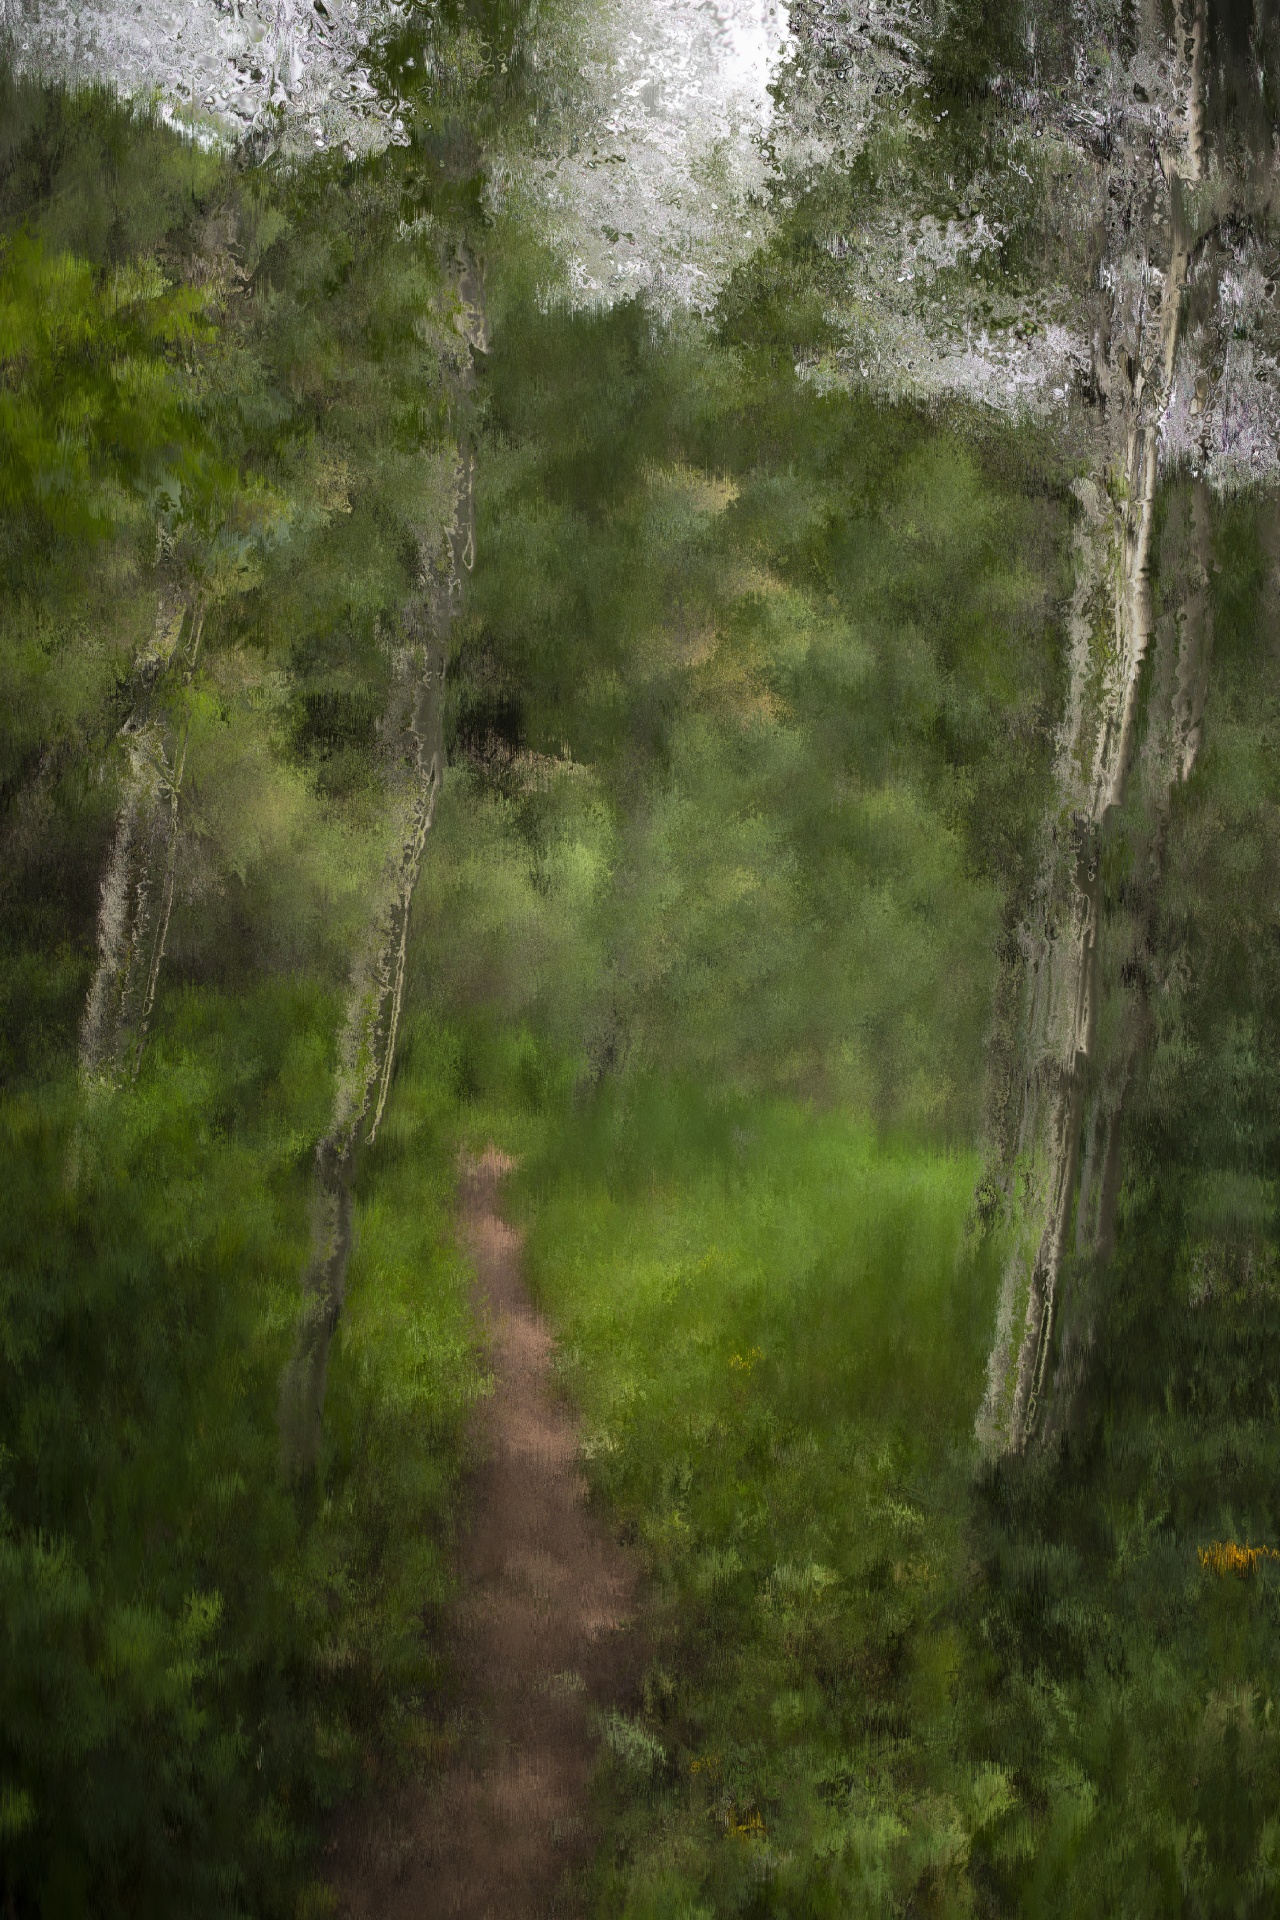 Caminho da floresta